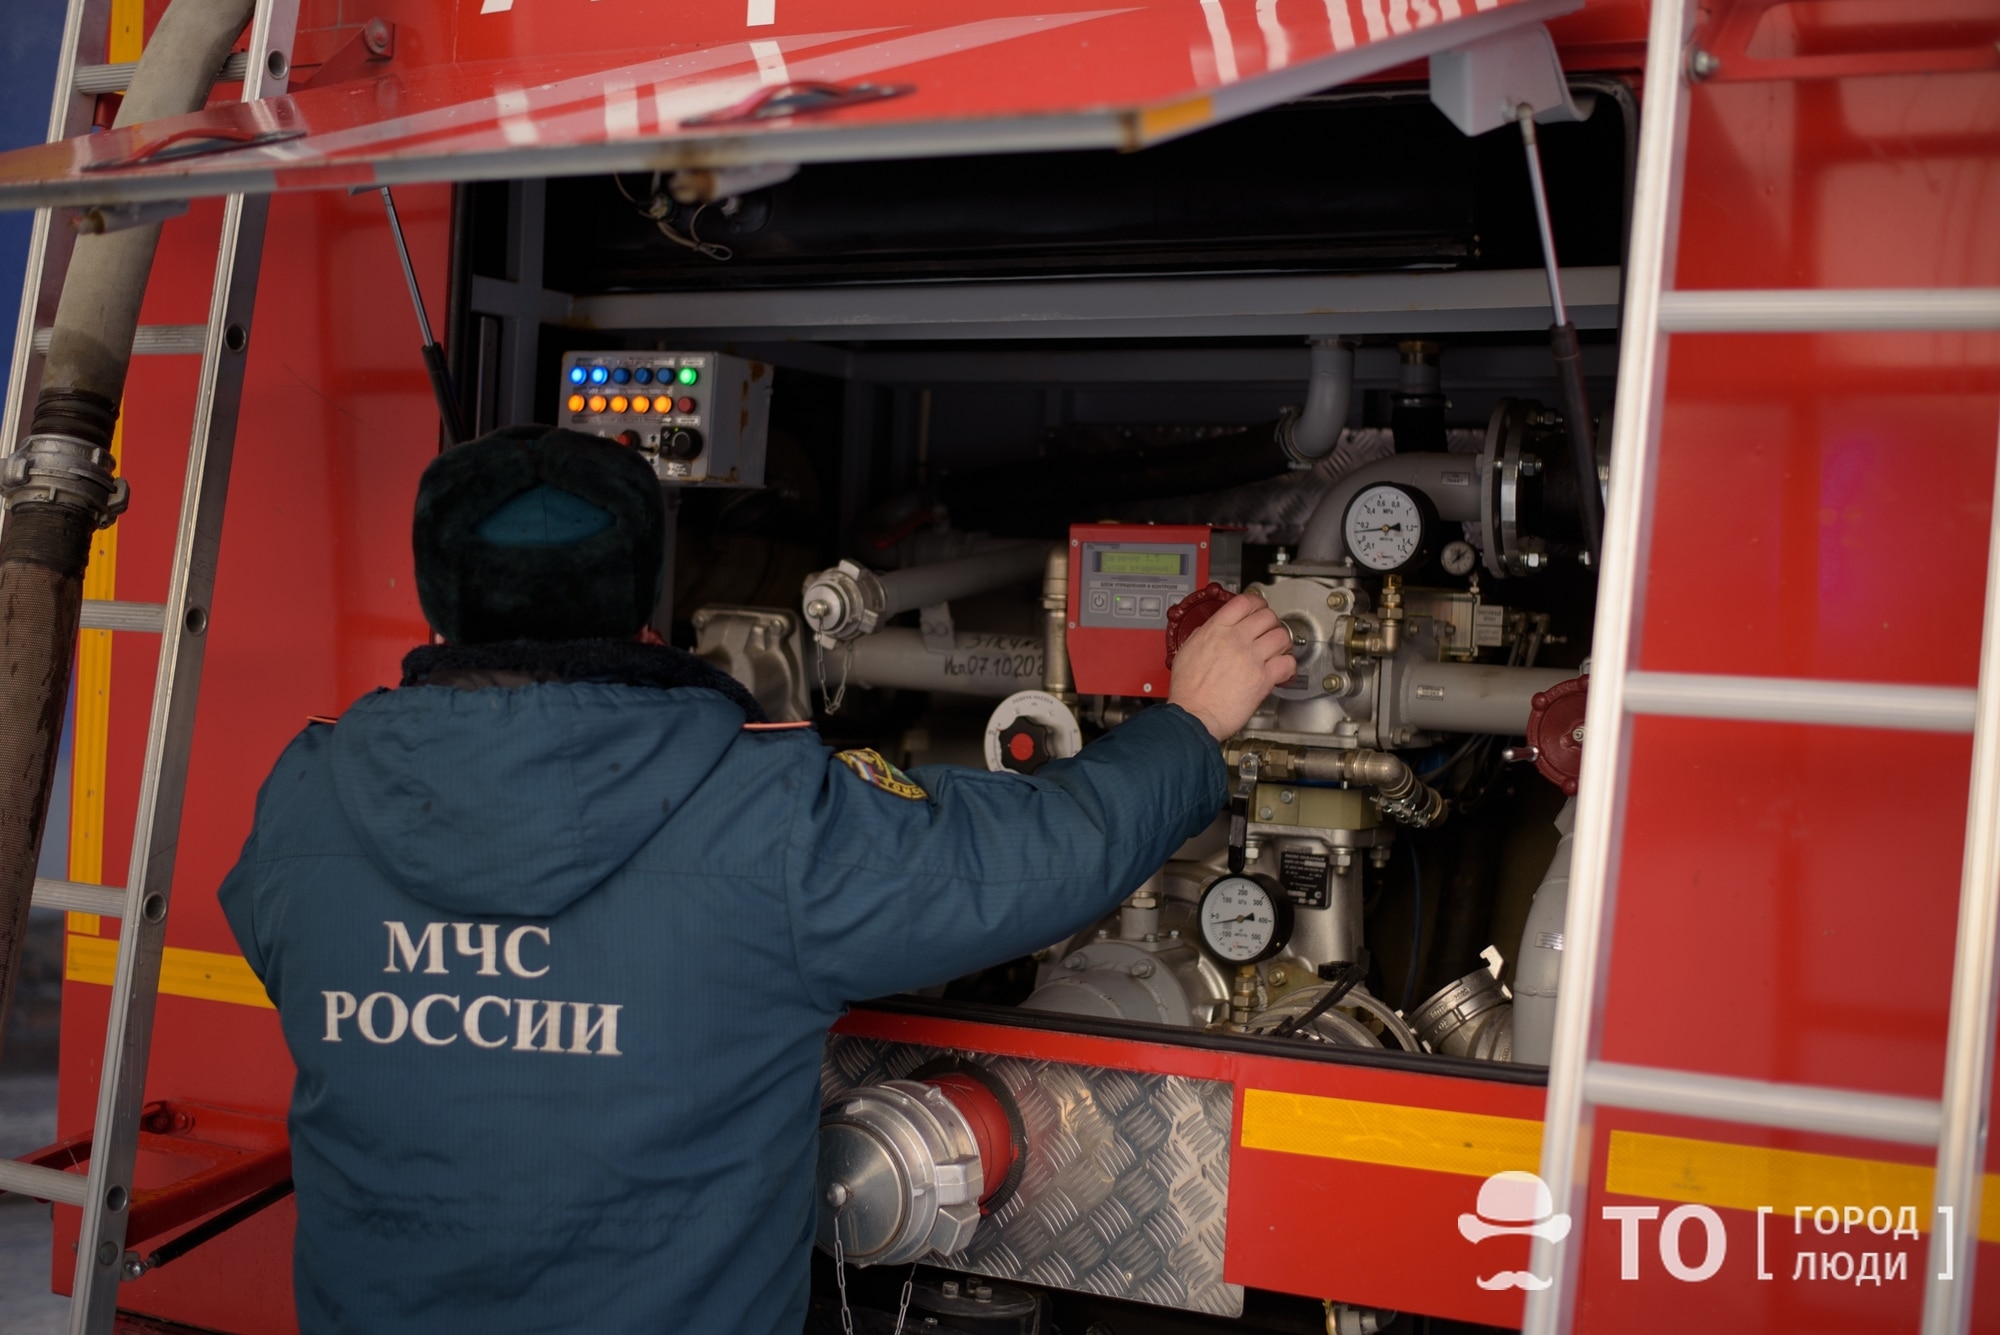 Происшествия, Томские новости, пожар горит огонь сводка происшествий жесть Томска Томские пожарные спасли двоих из горящего здания